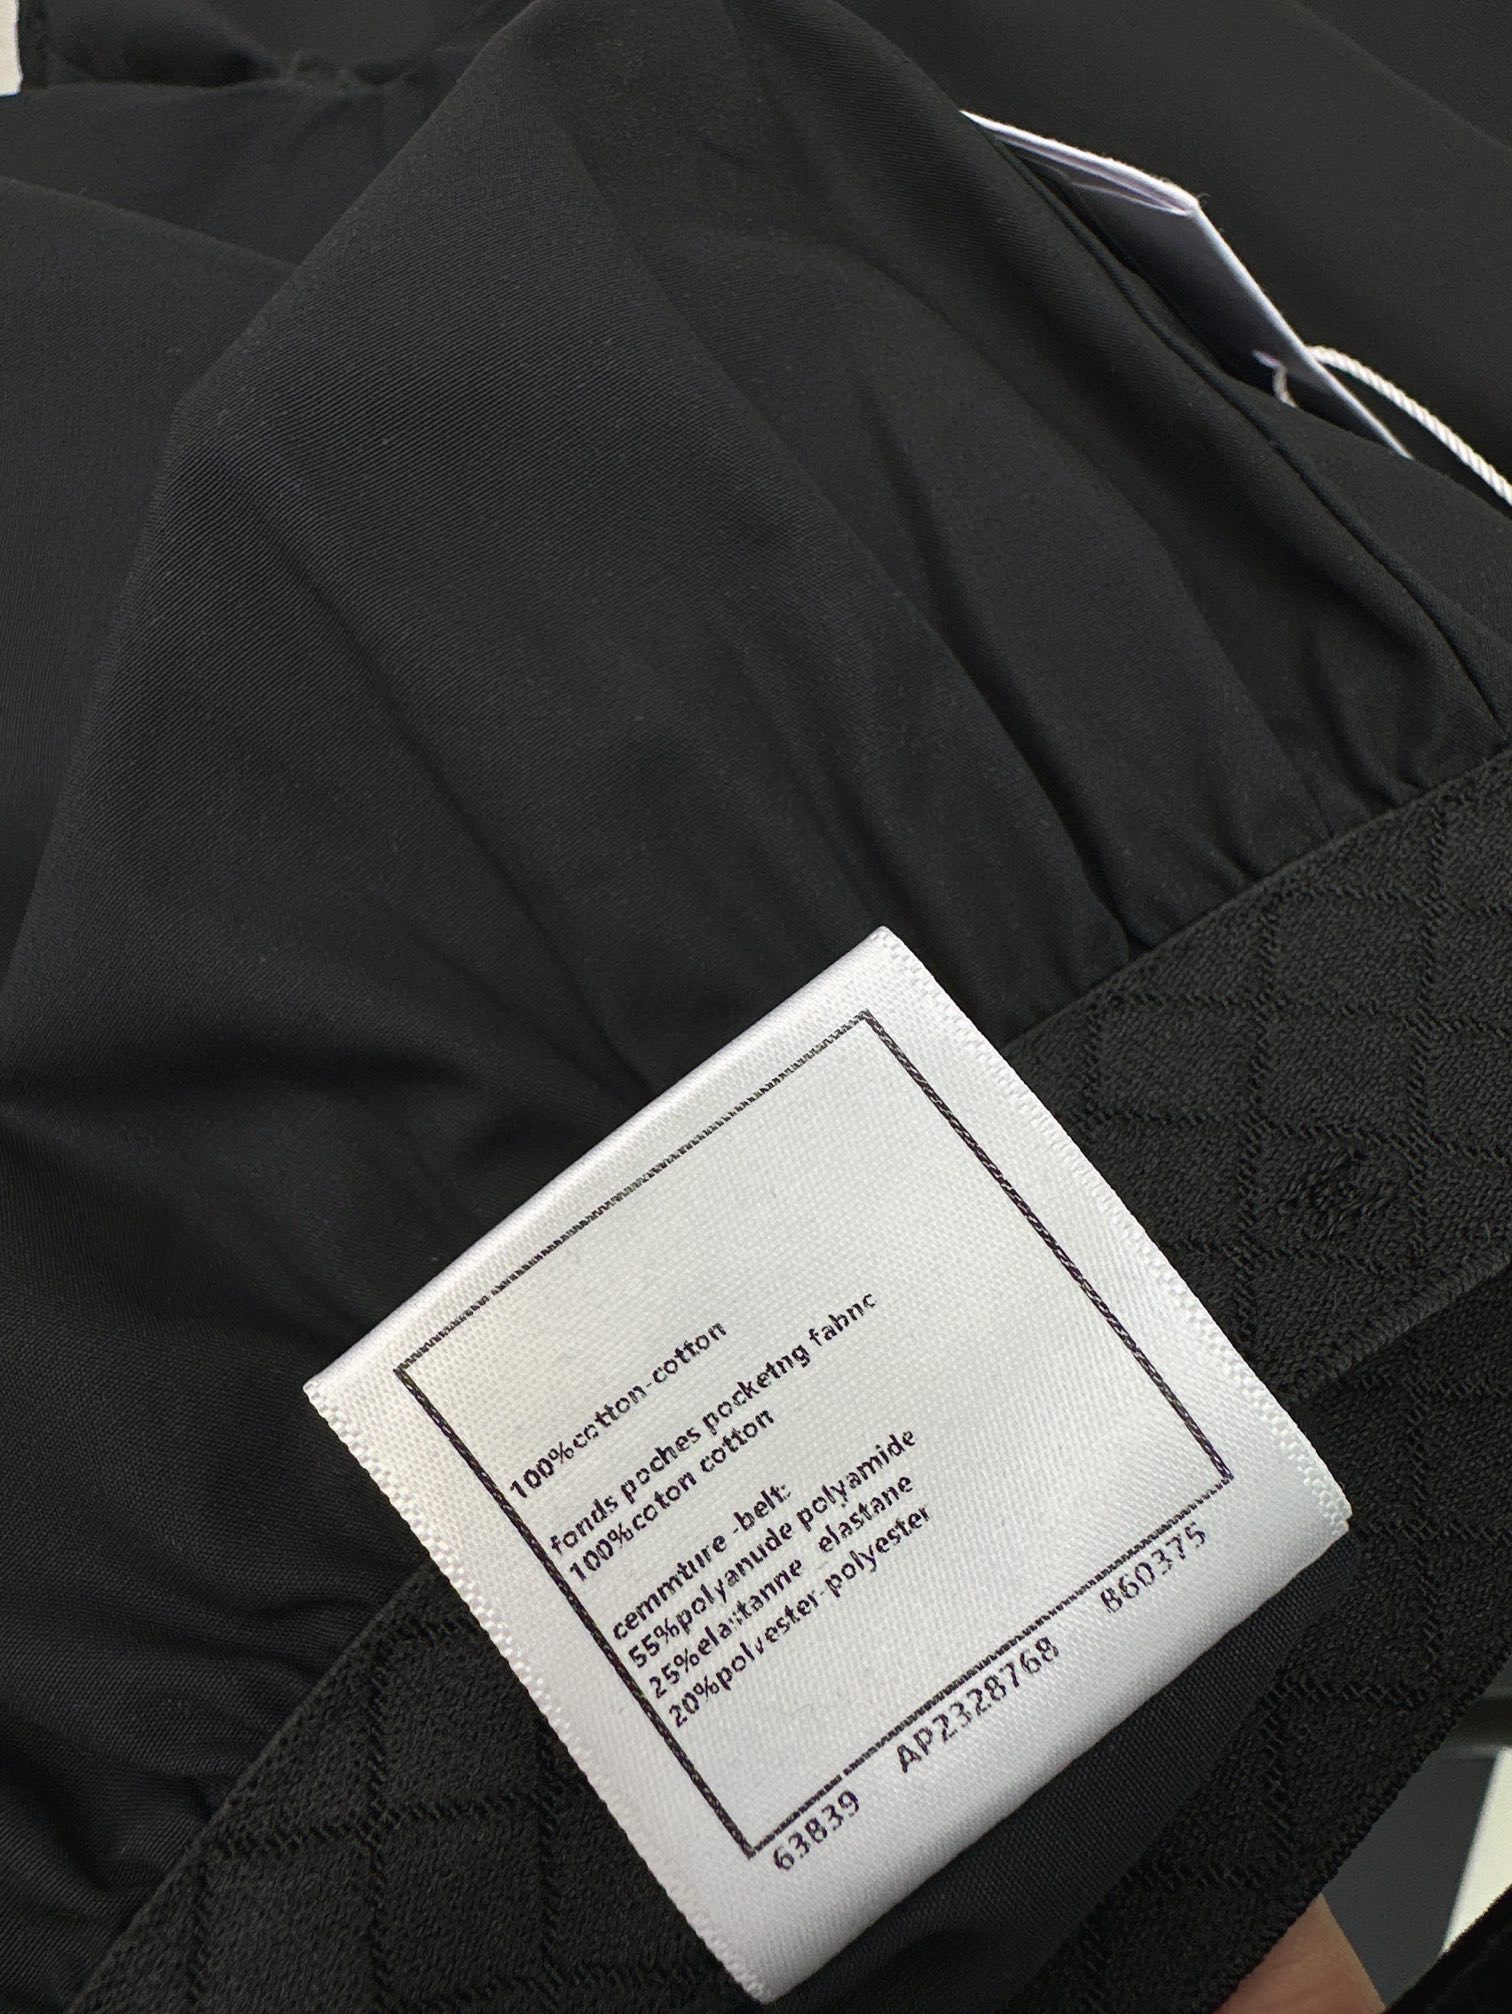 百搭单品C家24Ss春夏最新款经典字母织带短裤原版定制高支棉面料质感裤型都是一绝百搭时尚的神器结合专属标